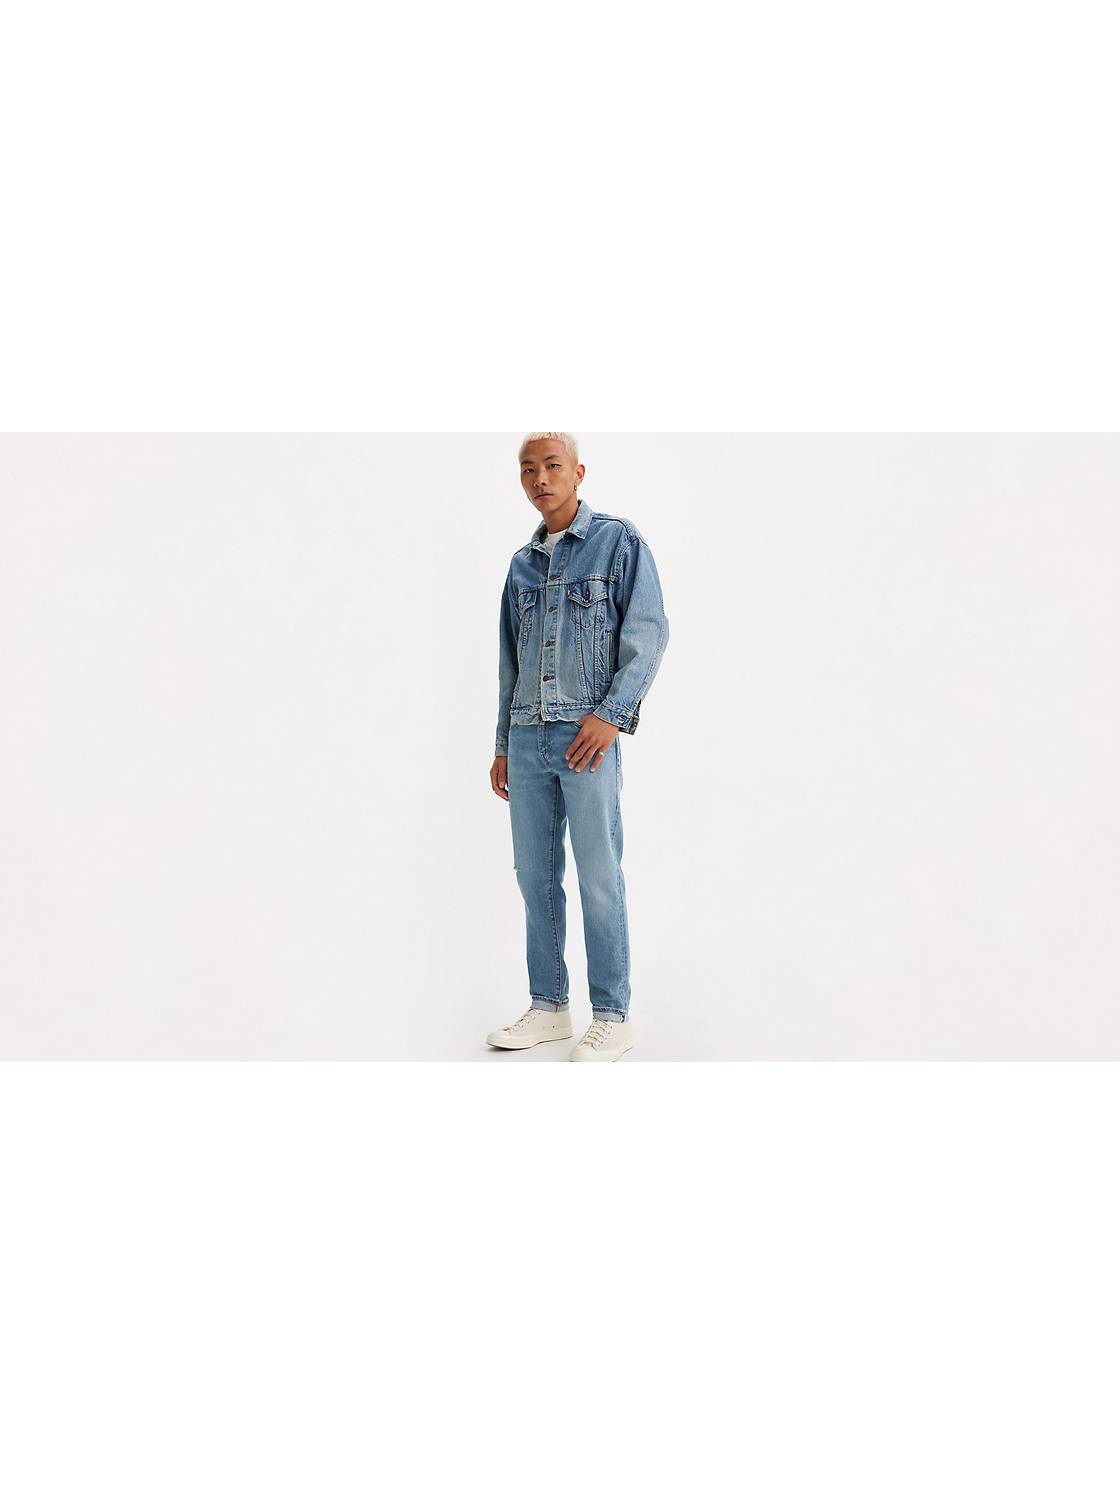 Calça Masculina Slim Taper Jeans Escuro Levi's - Samila Store